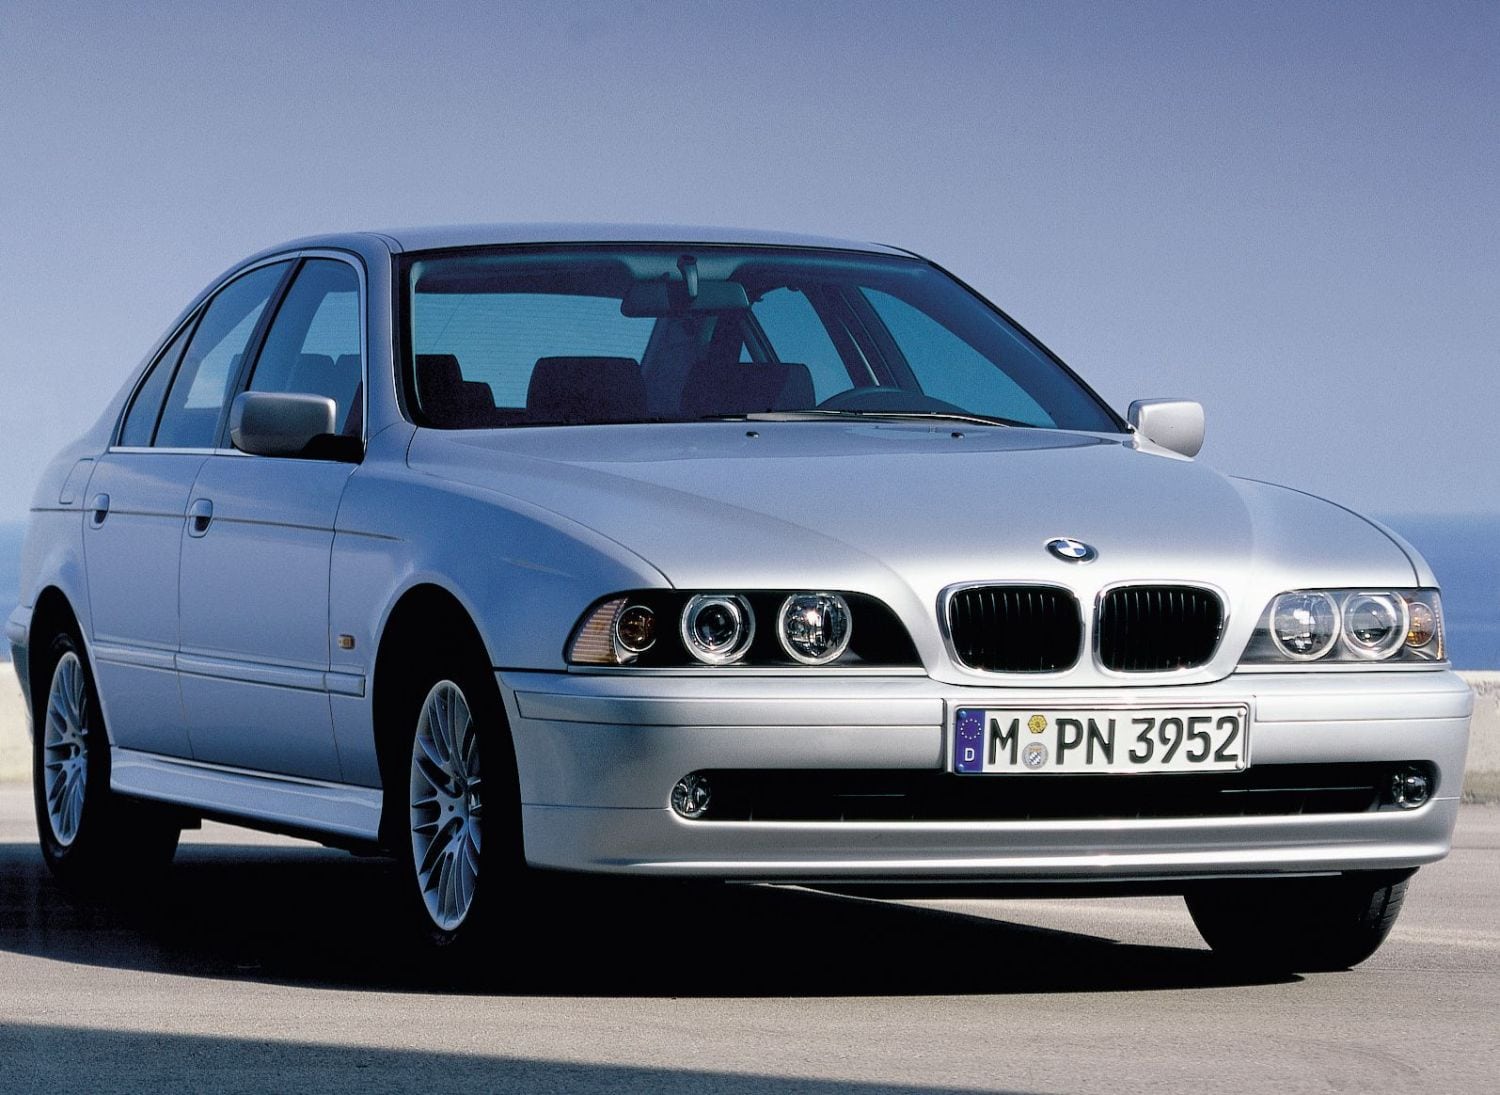 Descargar Catalogo de Partes BMW 5 Series 2000-2003 AutoPartes y Refacciones